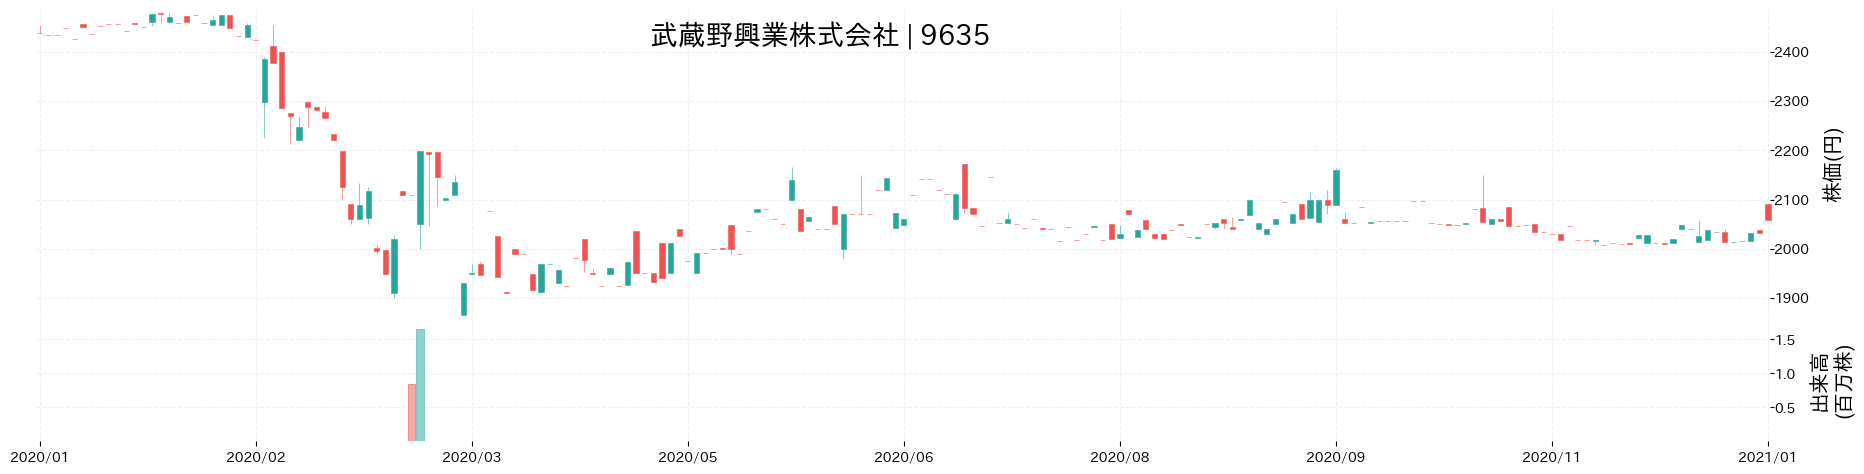 武蔵野興業の株価推移(2020)